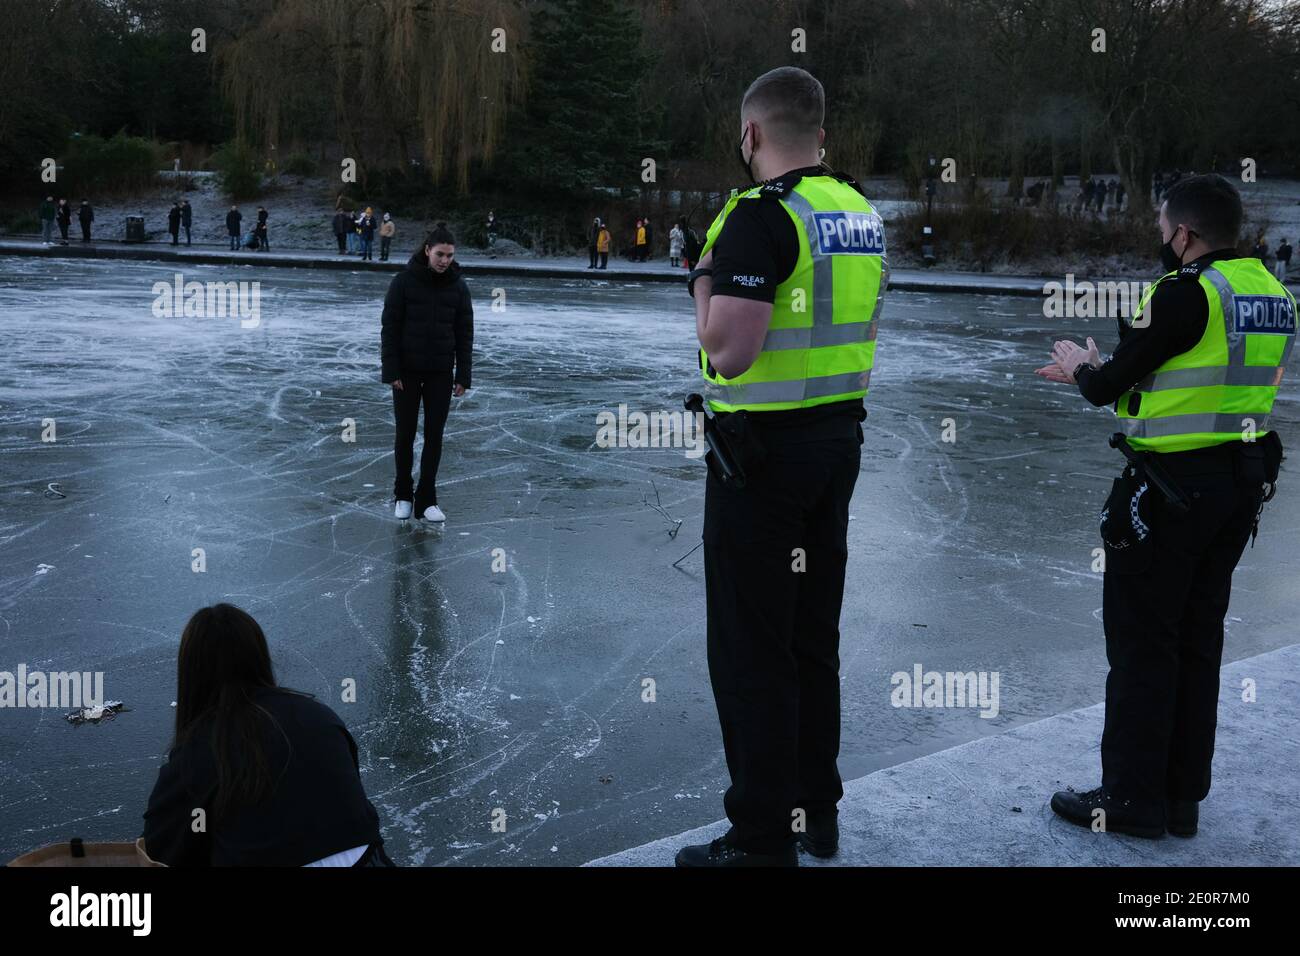 Glasgow, Regno Unito, 2 gennaio 2021. Le persone approfittano della stagione fredda per pattinare sul ghiaccio e camminano sul laghetto delle barche ghiacciate nel Queen's Park, nel lato sud della città. La polizia alla fine ha rimosso tutti dal ghiaccio a causa di preoccupazioni per la sicurezza. Foto: Jeremy Sutton-Hibbert/ Alamy Live News Foto Stock